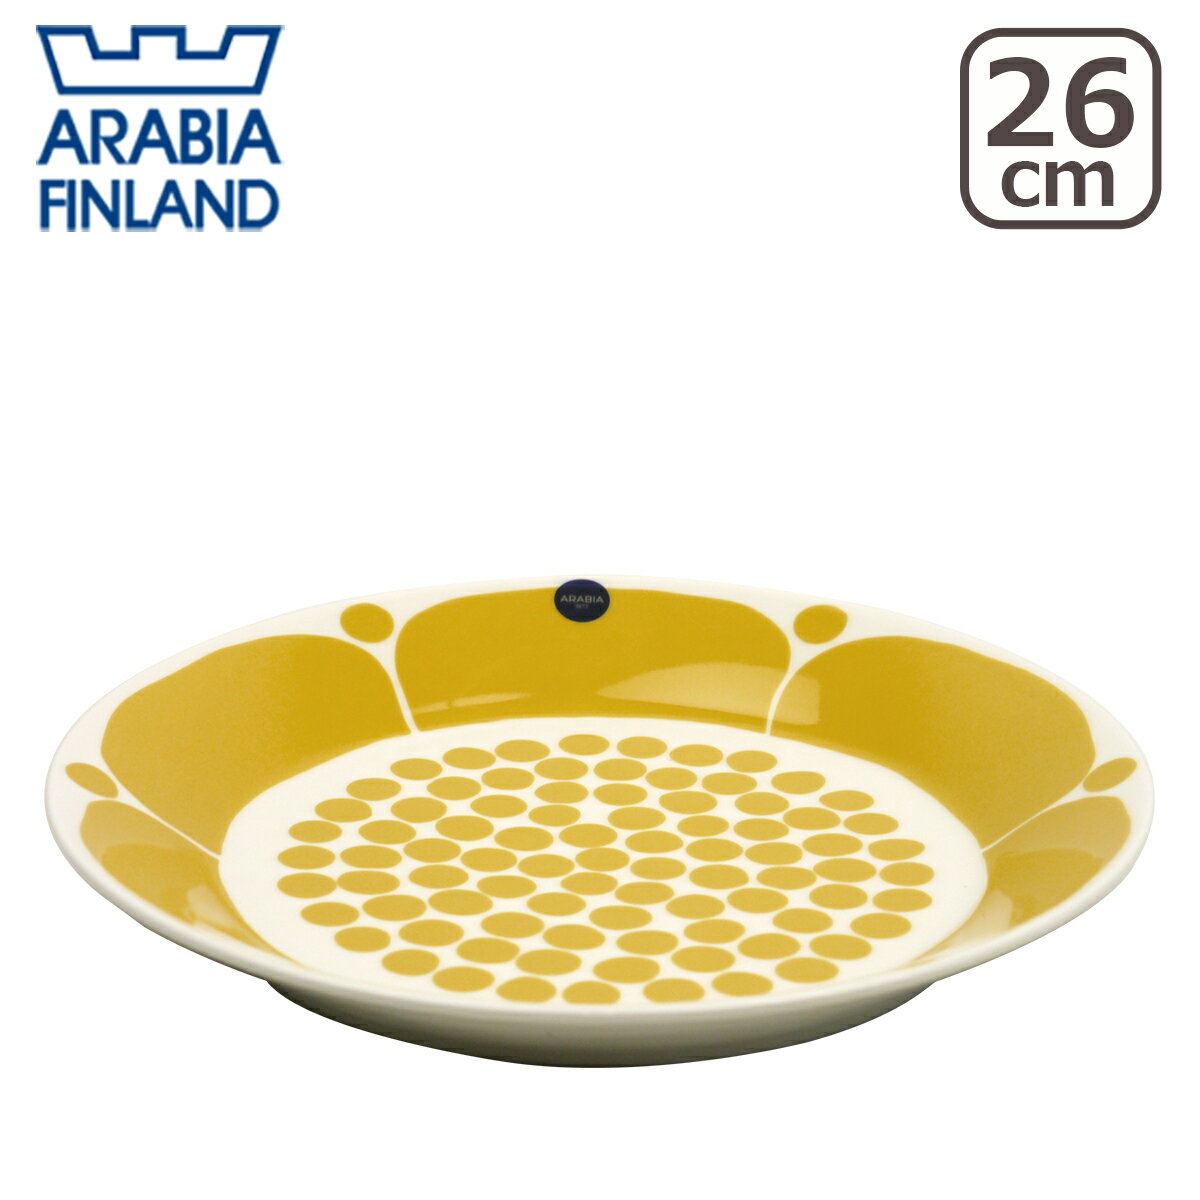 アラビア 食器 アラビア（Arabia） スンヌンタイ（Sunnuntai）プレート 26cm 北欧 フィンランド 食器 Arabia 食器洗い機 対応